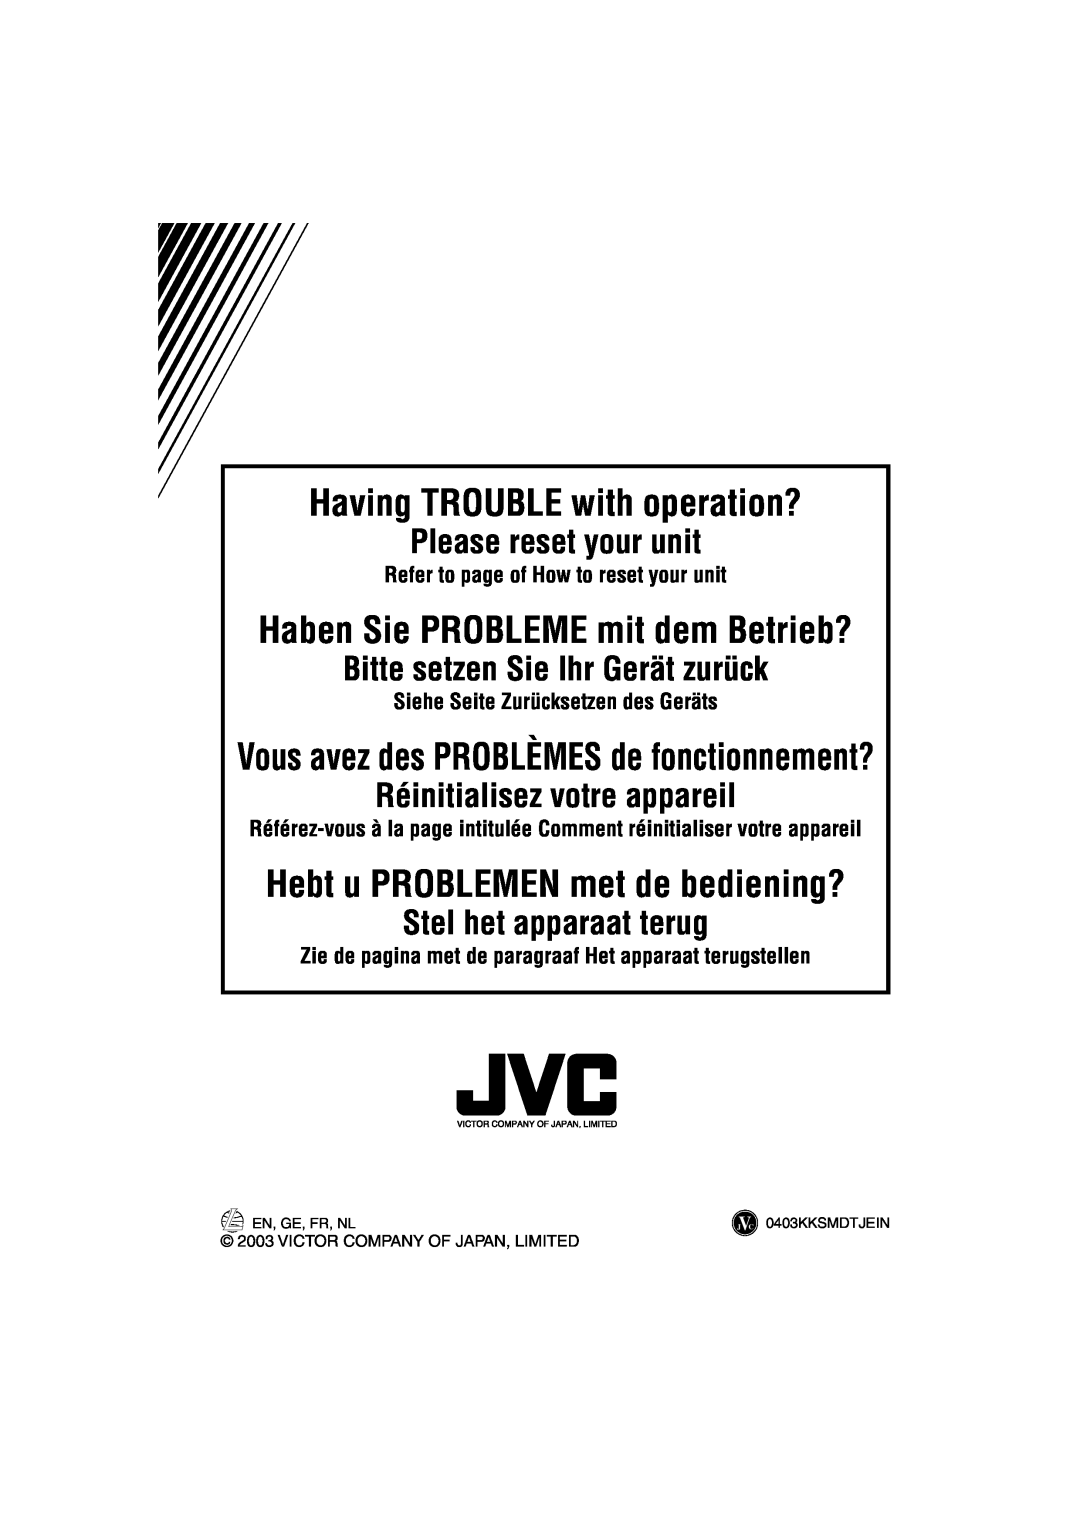 JVC GET0140-001A, KS-FX842R manual Having TROUBLE with operation?, Please reset your unit, Bitte setzen Sie Ihr Gerät zurück 